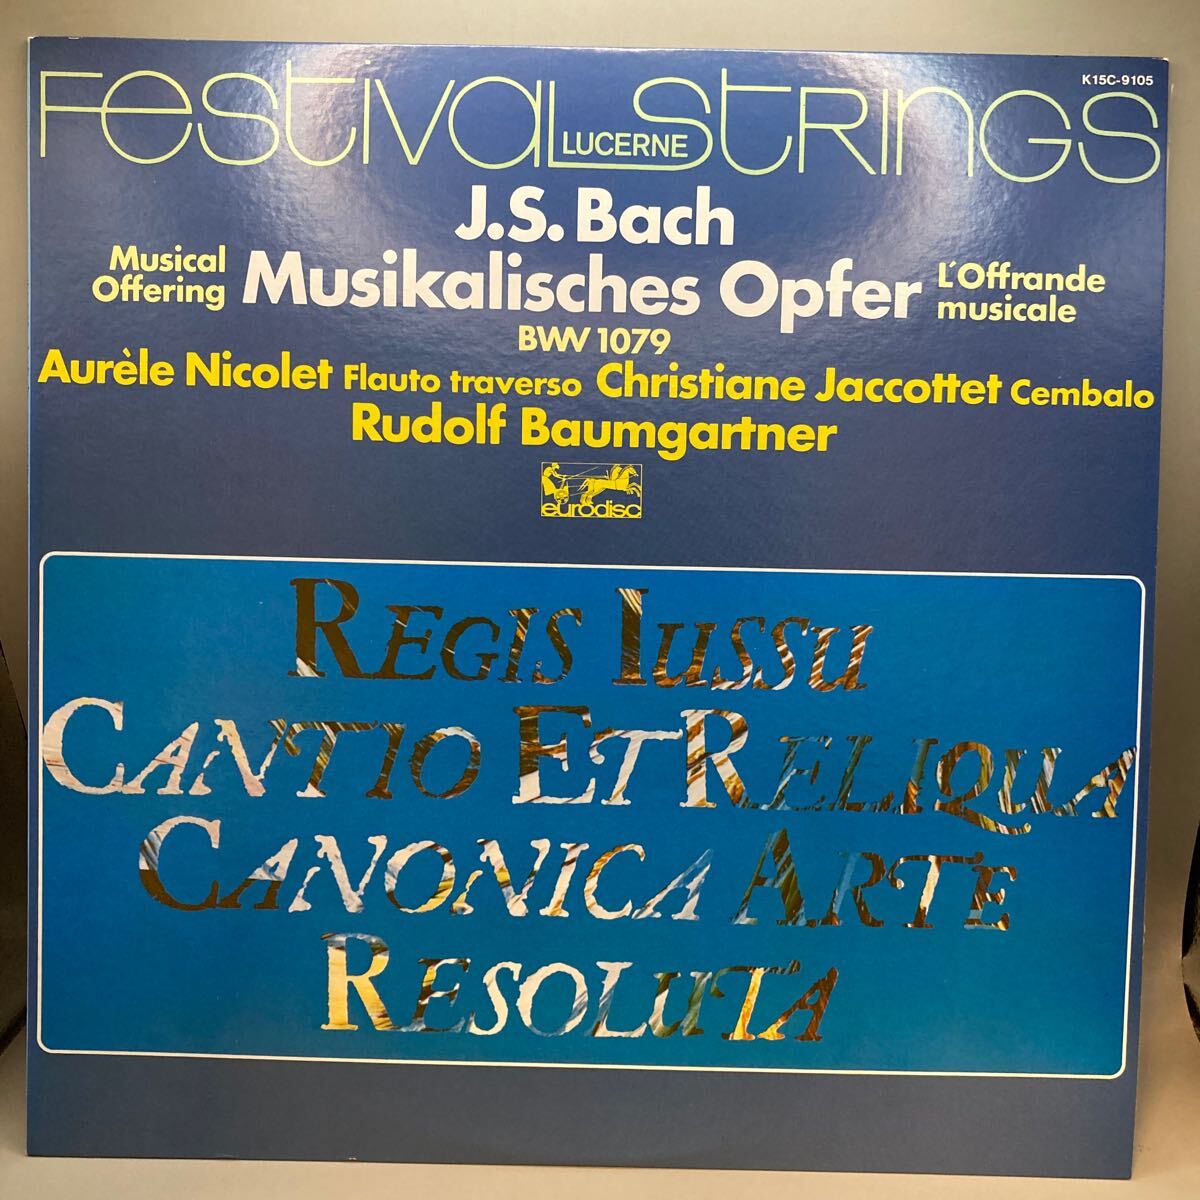  прекрасный запись LP bow mgaru тонер ba - музыка. ... было использовано Nico reyakotetorutserun музыка праздник оркестровая музыка концерт .EURODISC K15C-9105